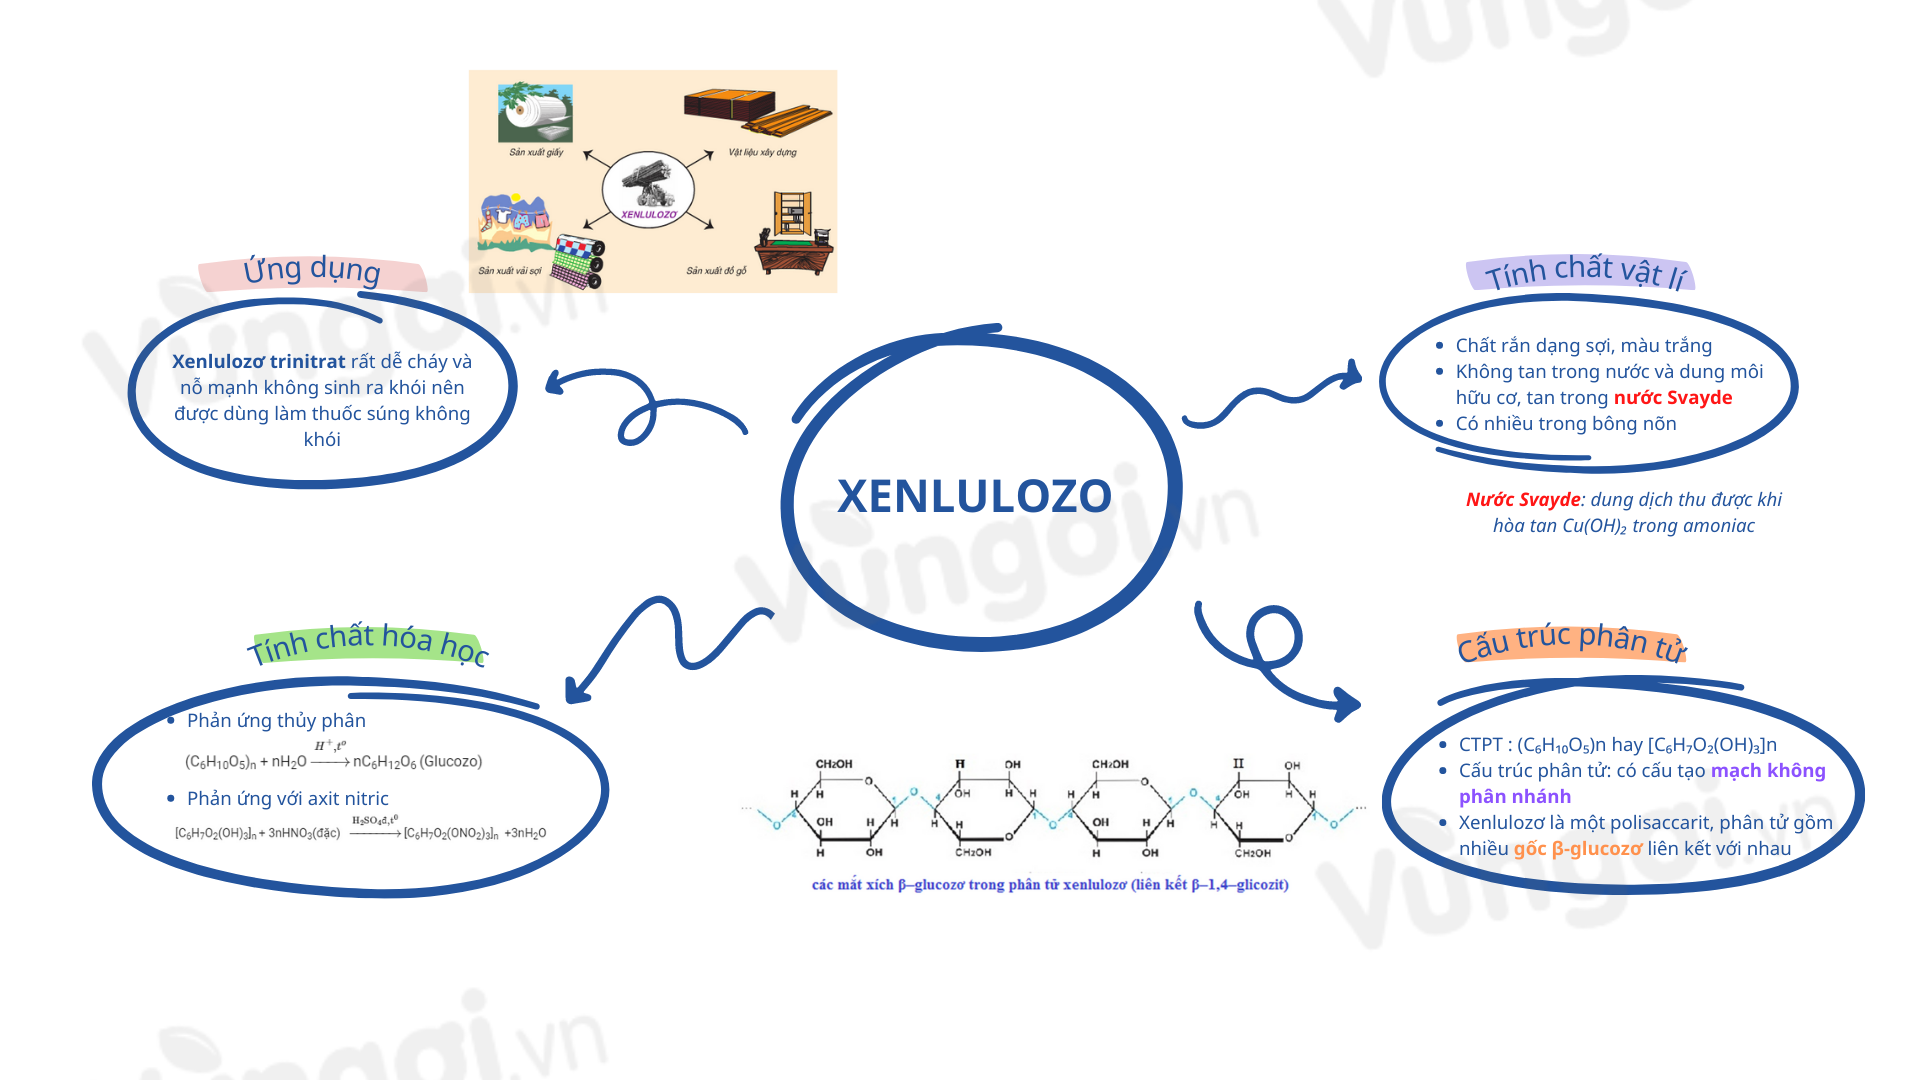 Lý thuyết sơ đồ vật suy nghĩ về xenlulozơ kho 1 - giải quyết và xử lý yếu tố ĐGNL